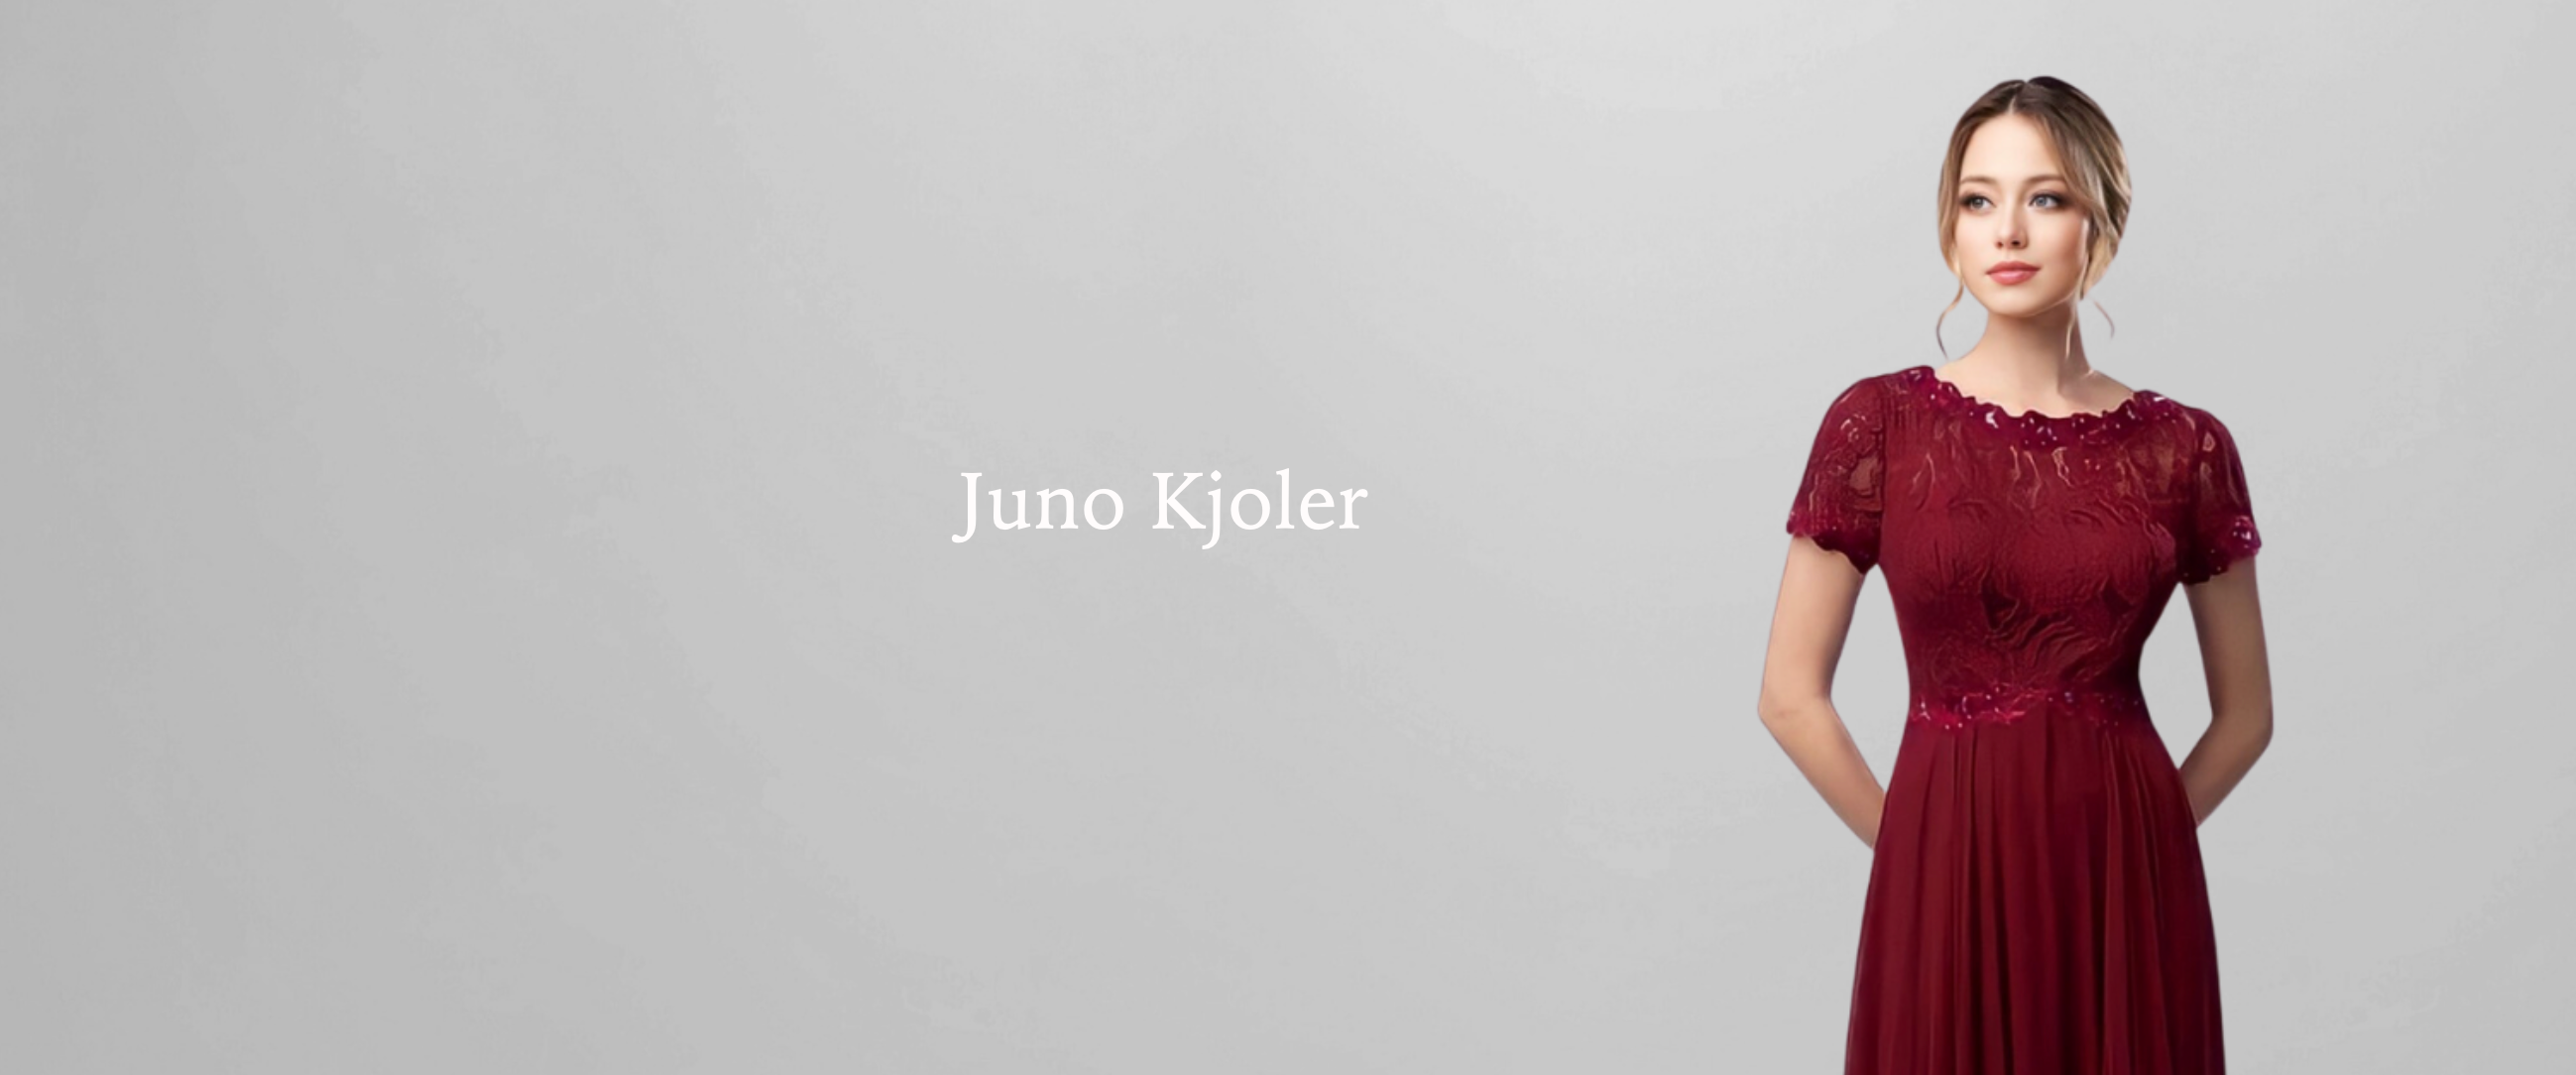 Juno_TP_Kjoler